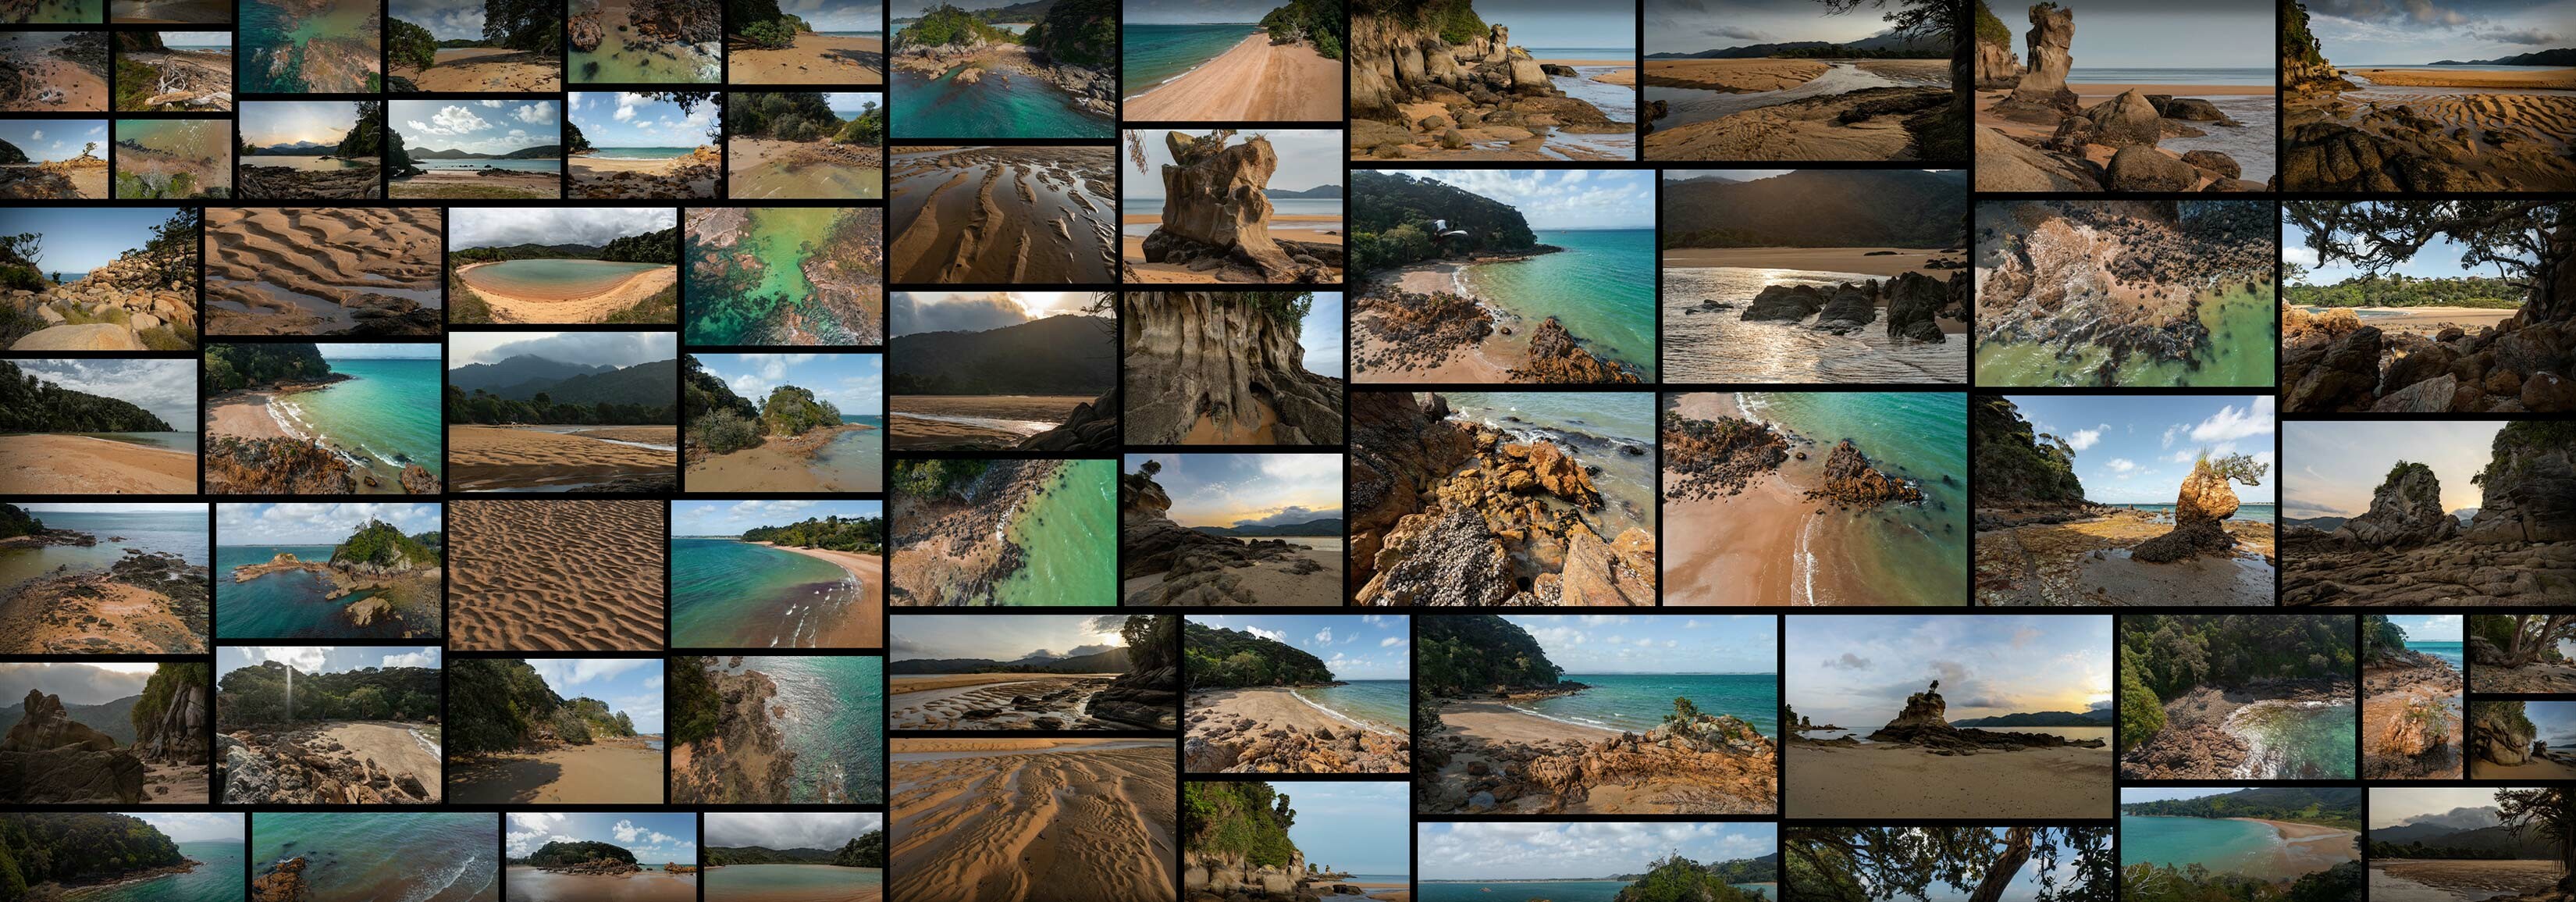 247 张海湾和小岛风景参考照片  BAYS & COVES II